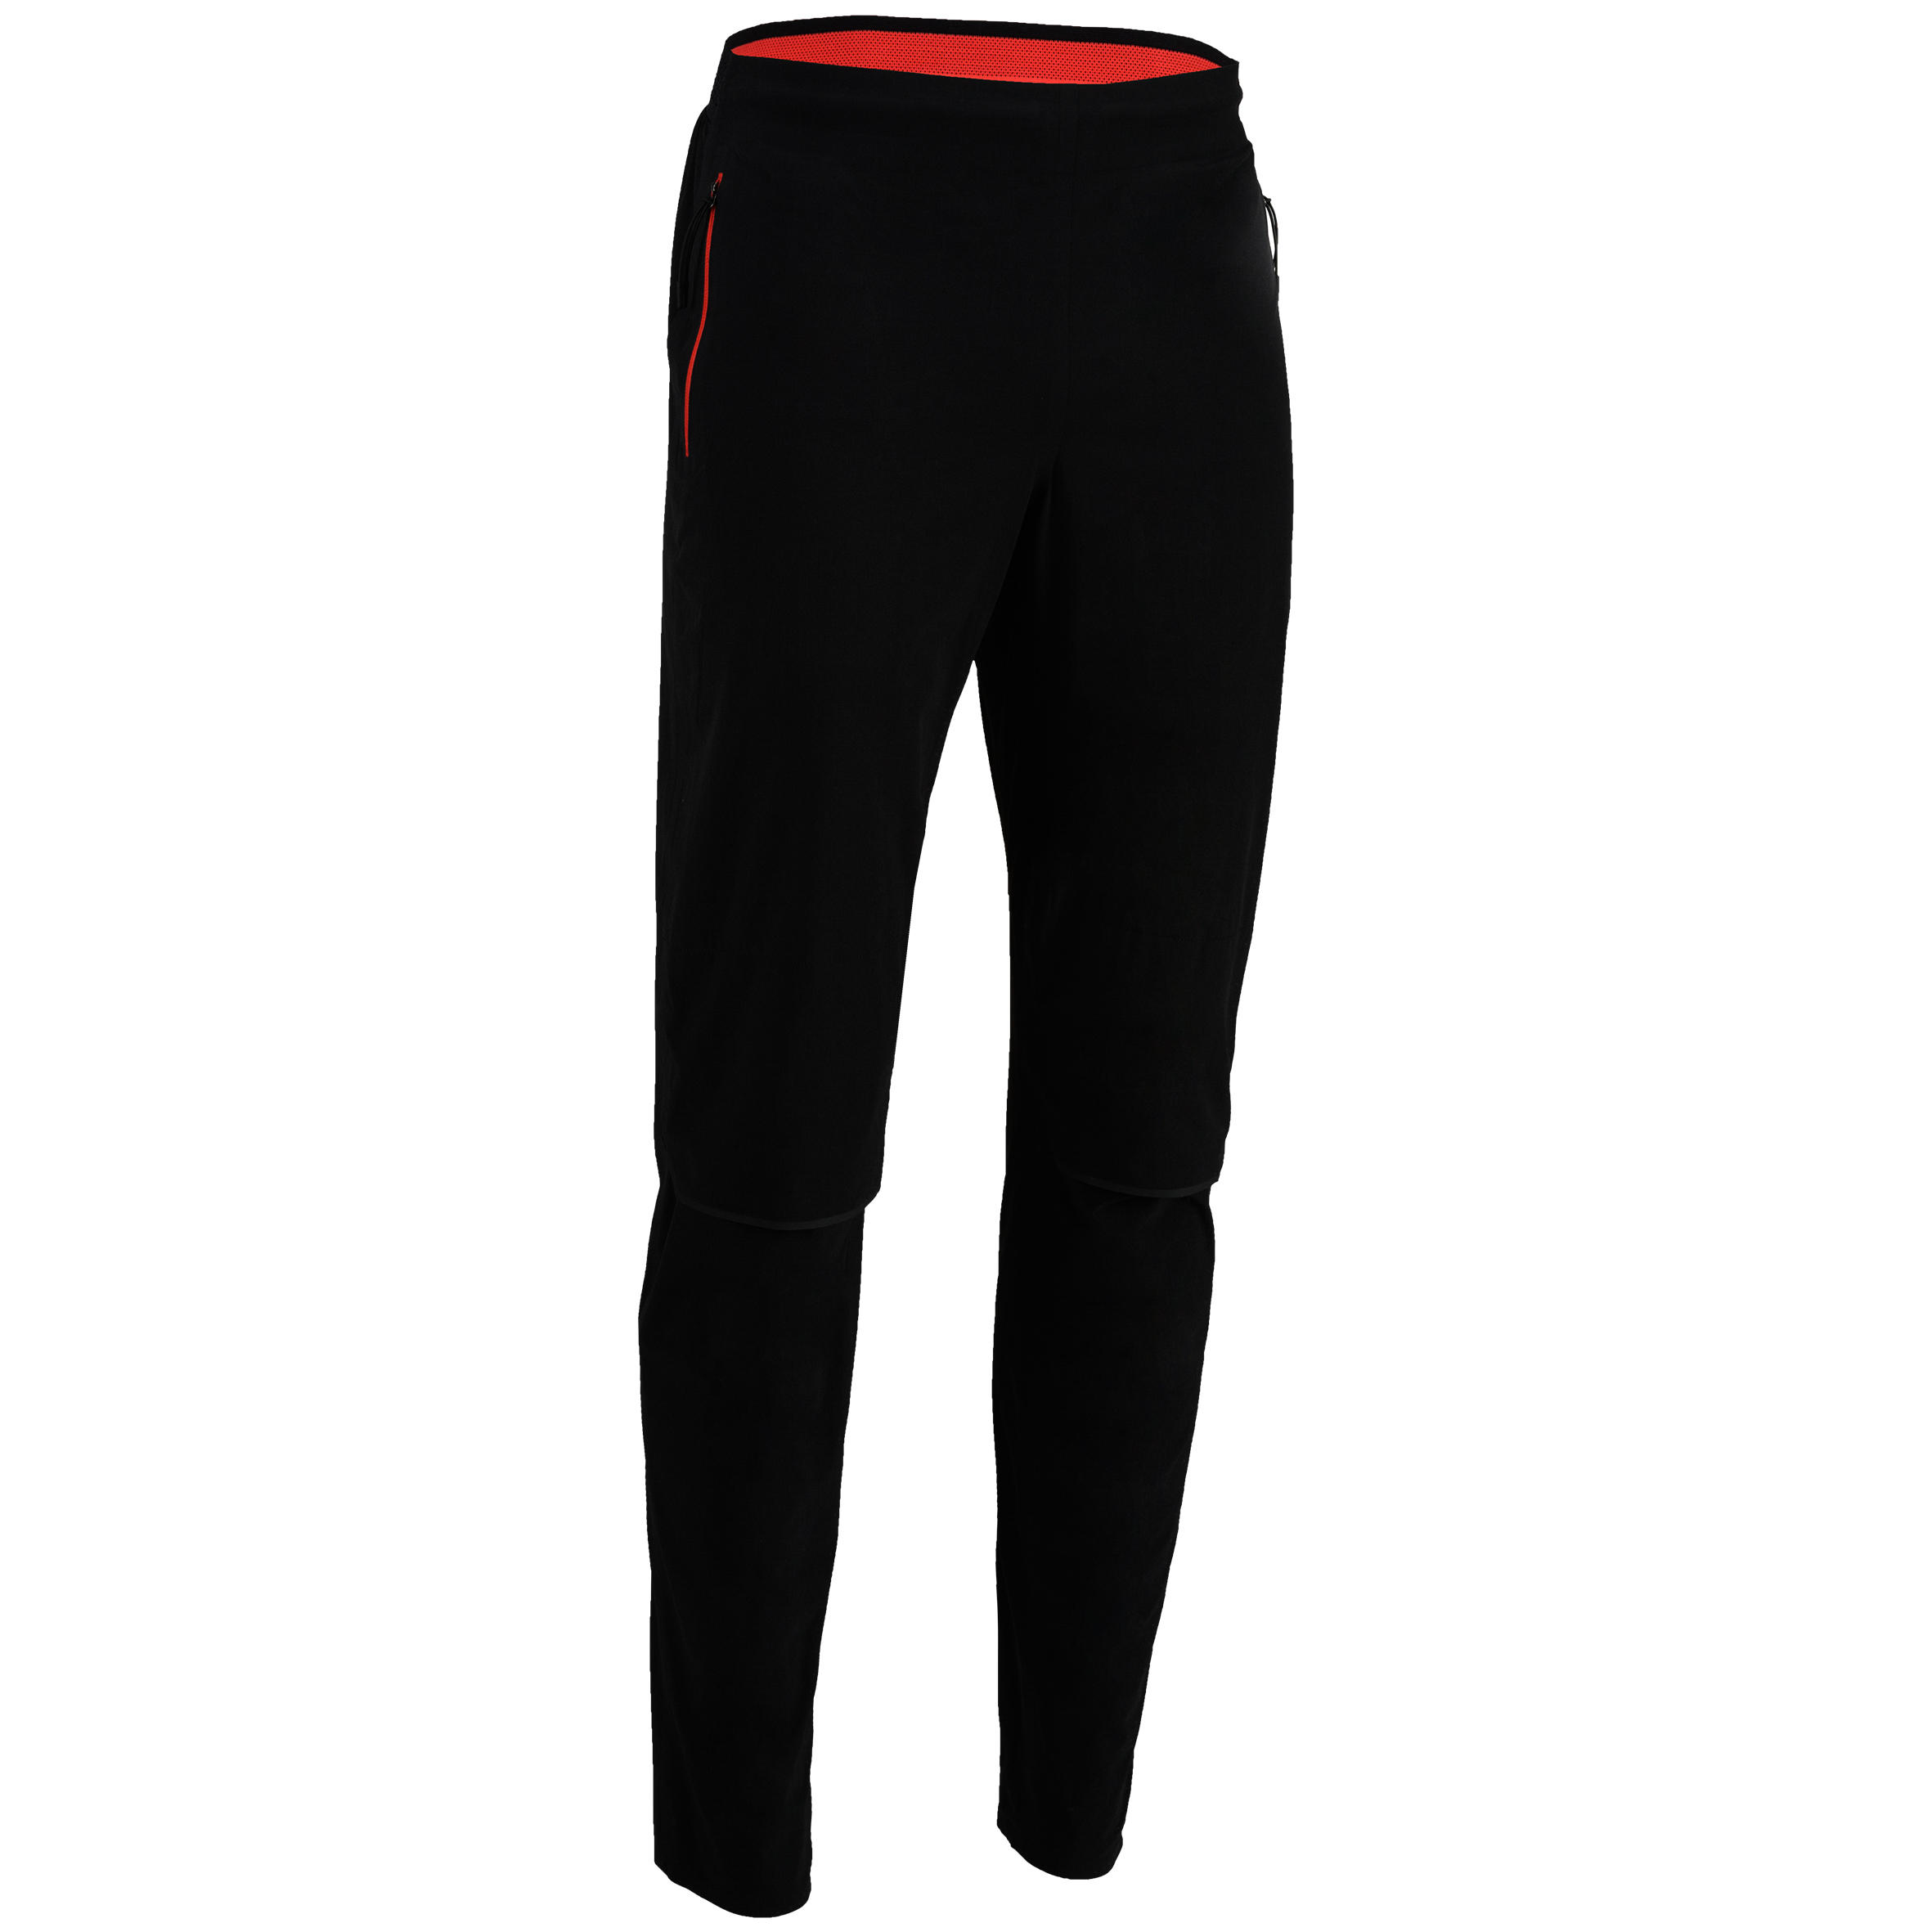 Threadbare Fitness gym leggings with mesh insert in black | ASOS